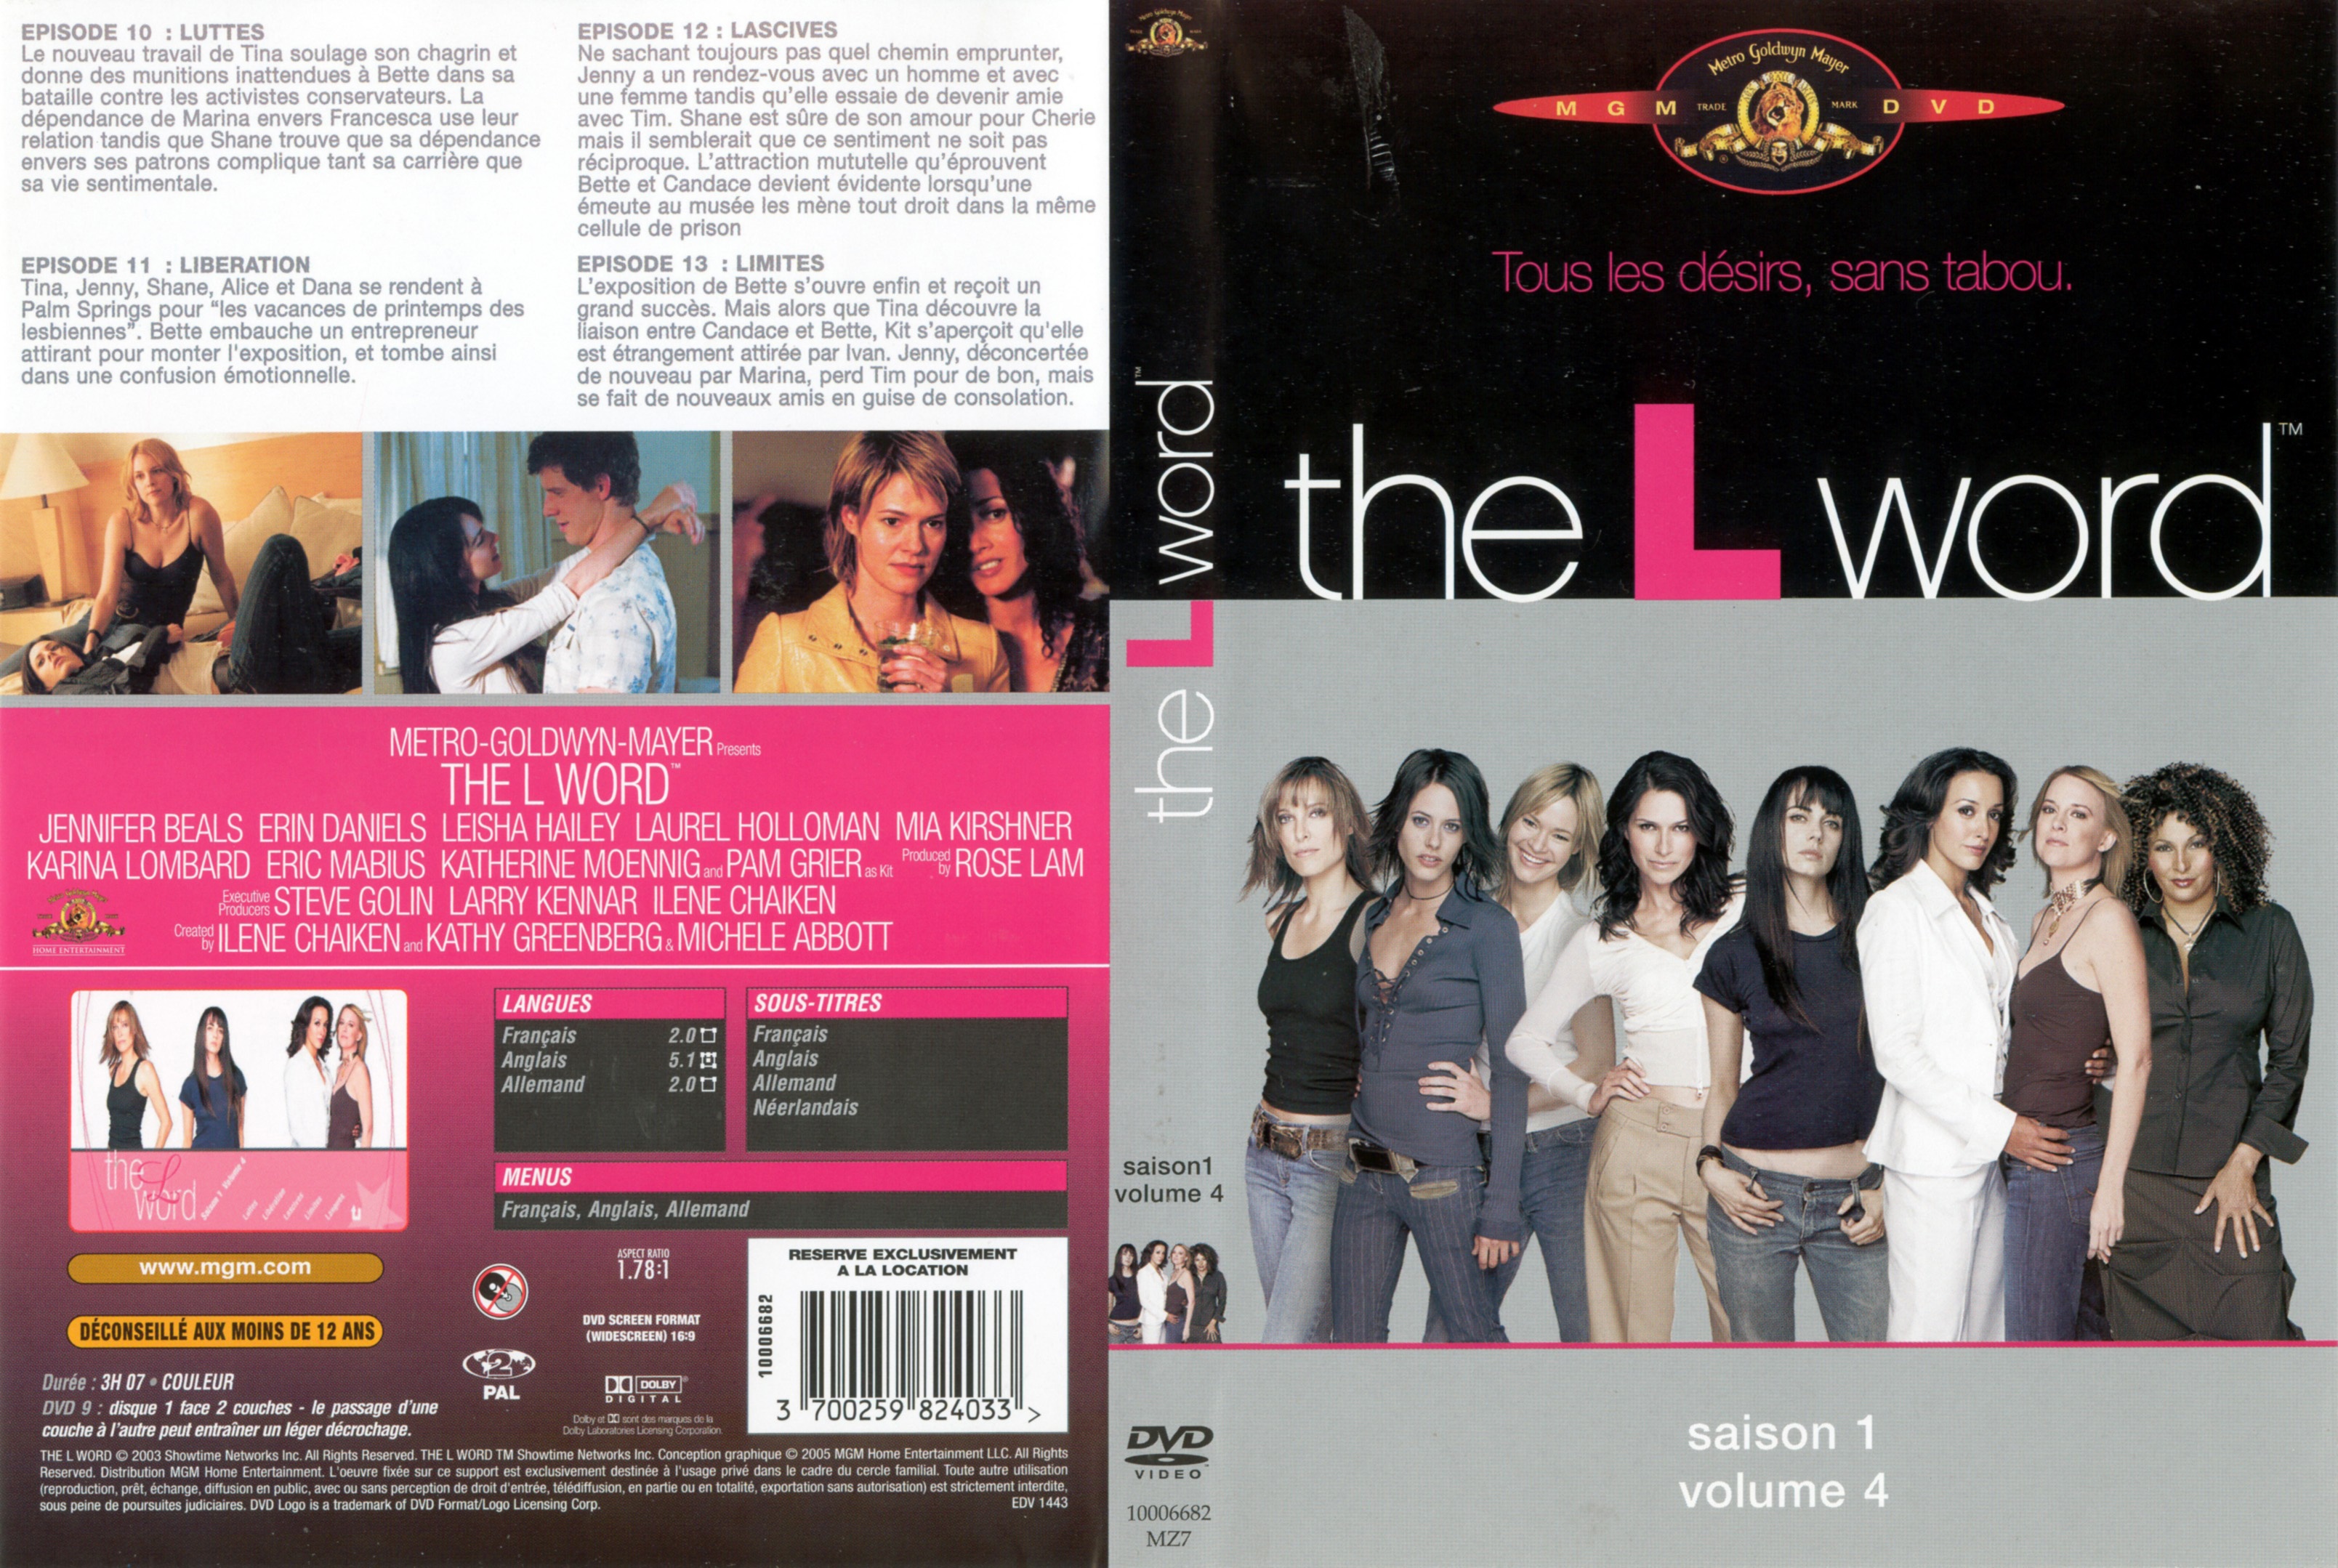 Jaquette DVD The L word saison 1 DVD 4